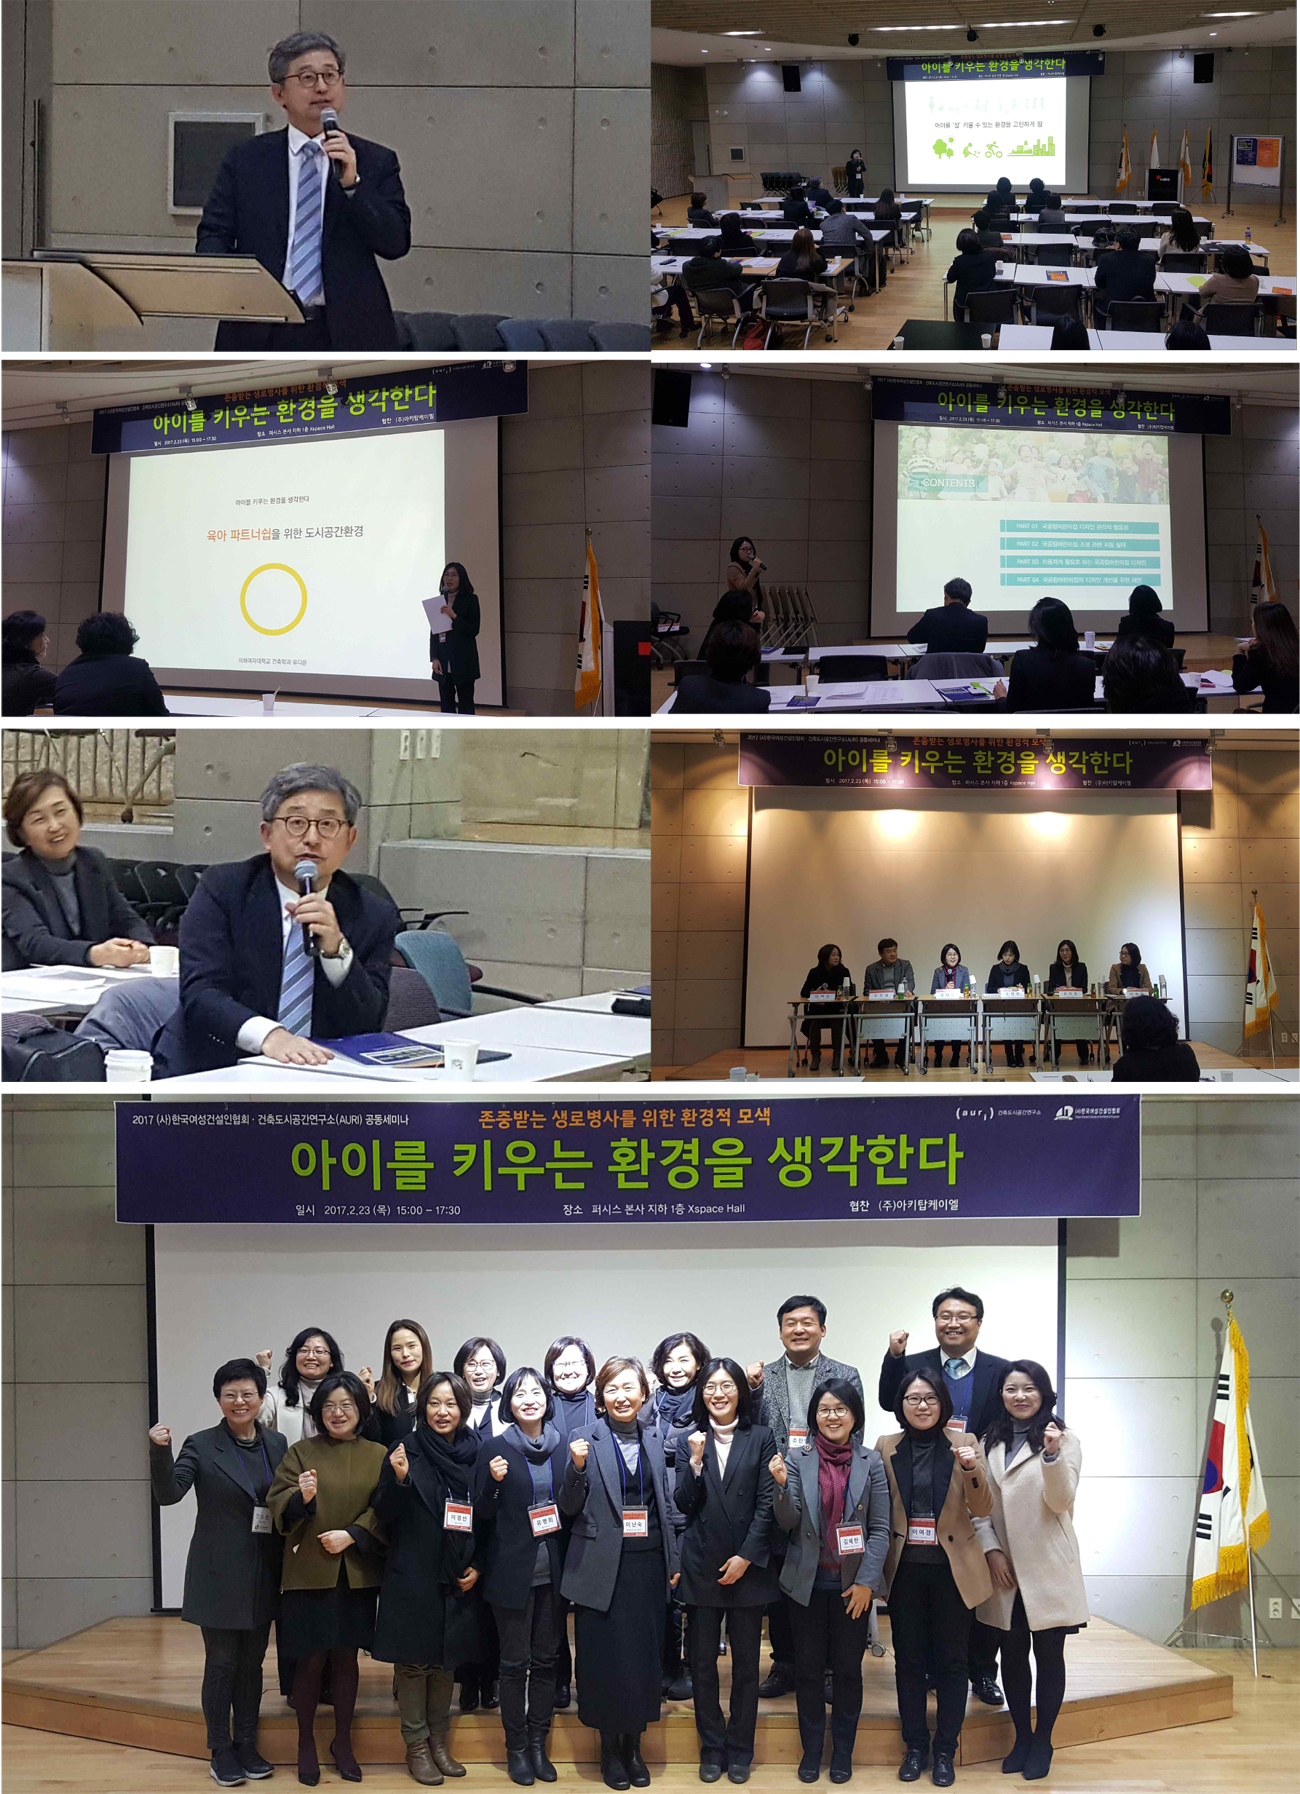  2017 건축도시공간연구소·(사)한국여성건설인협회 공동세미나 행사 관련 이미지 입니다.